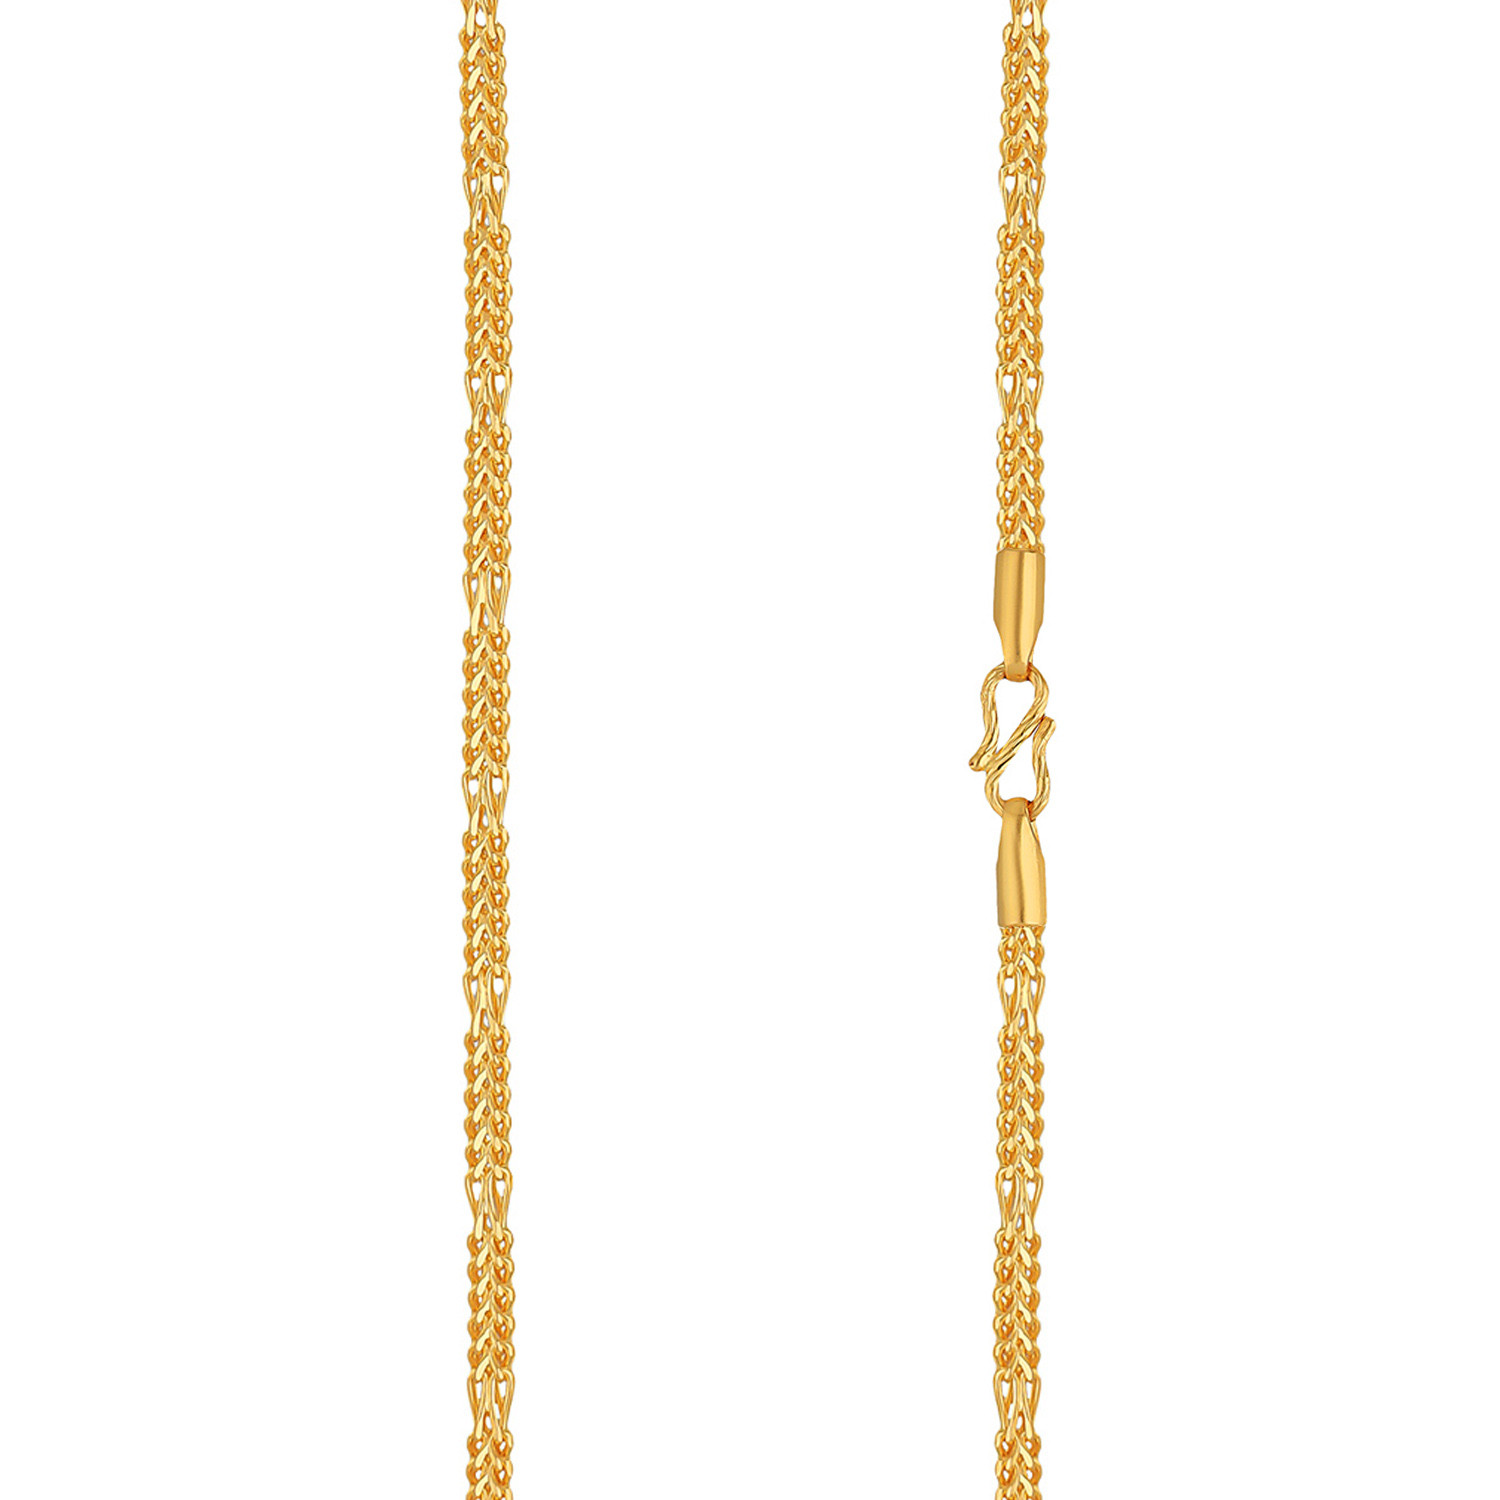 Malabar Gold Chain CHZNS10966